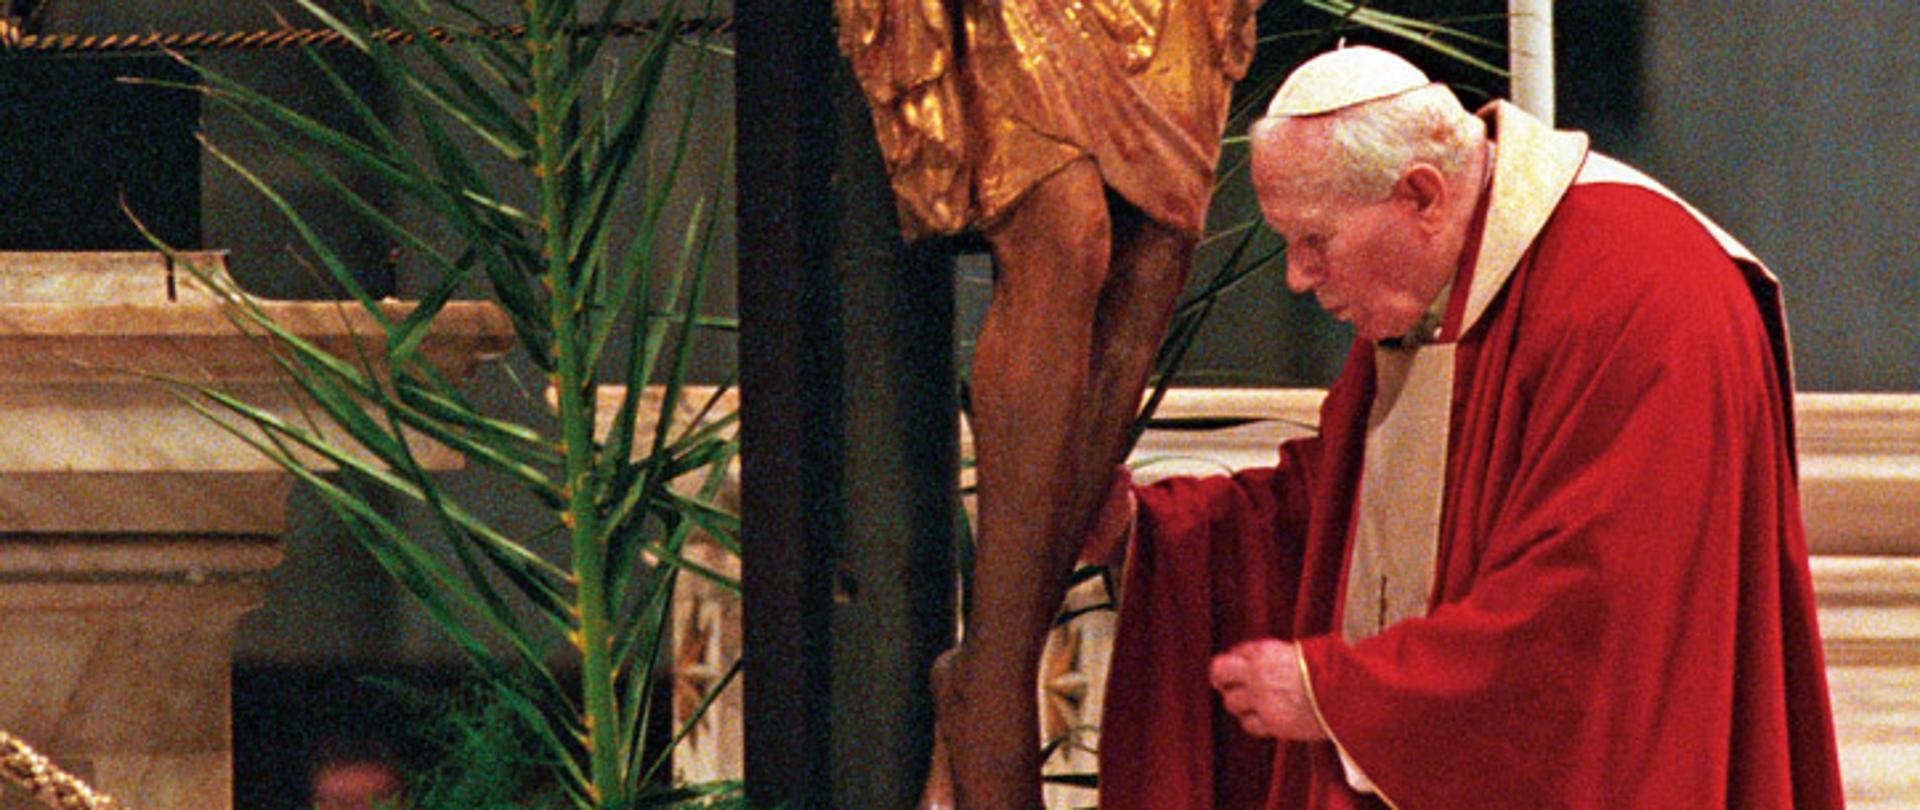 21.04.2000 Basilica Vaticana. Venerdi Santo. Adorazione della Croce.